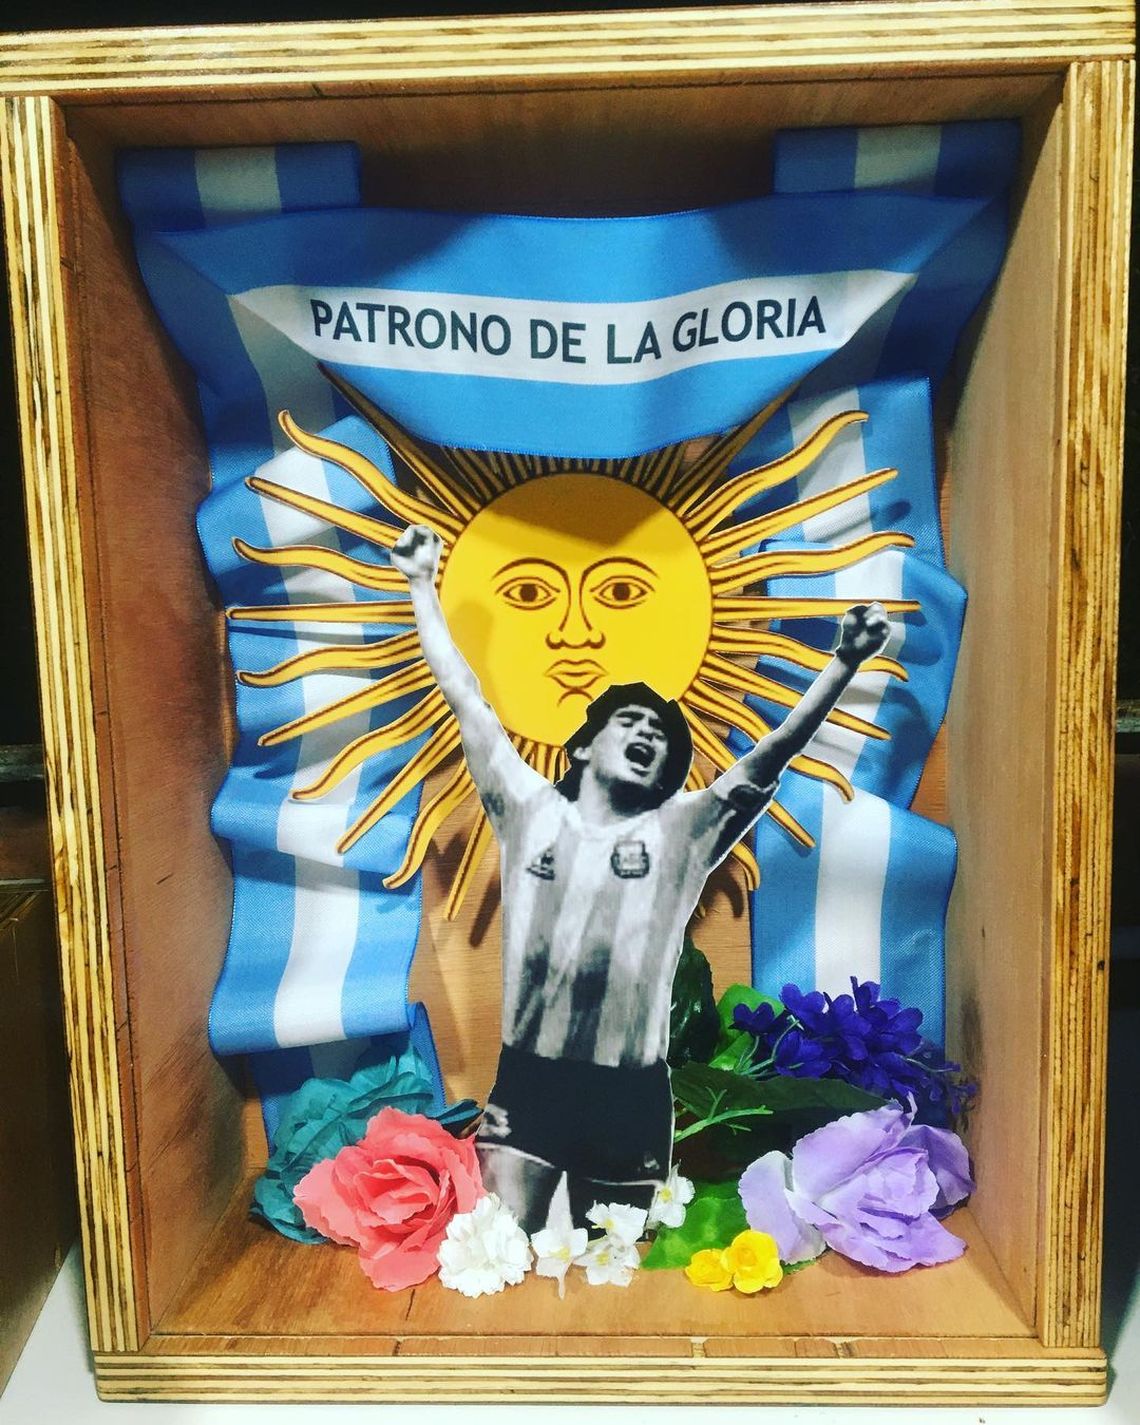 Ya hay más de 200 altares dedicados a Diego Armando Maradona en los barrios populares del país. 